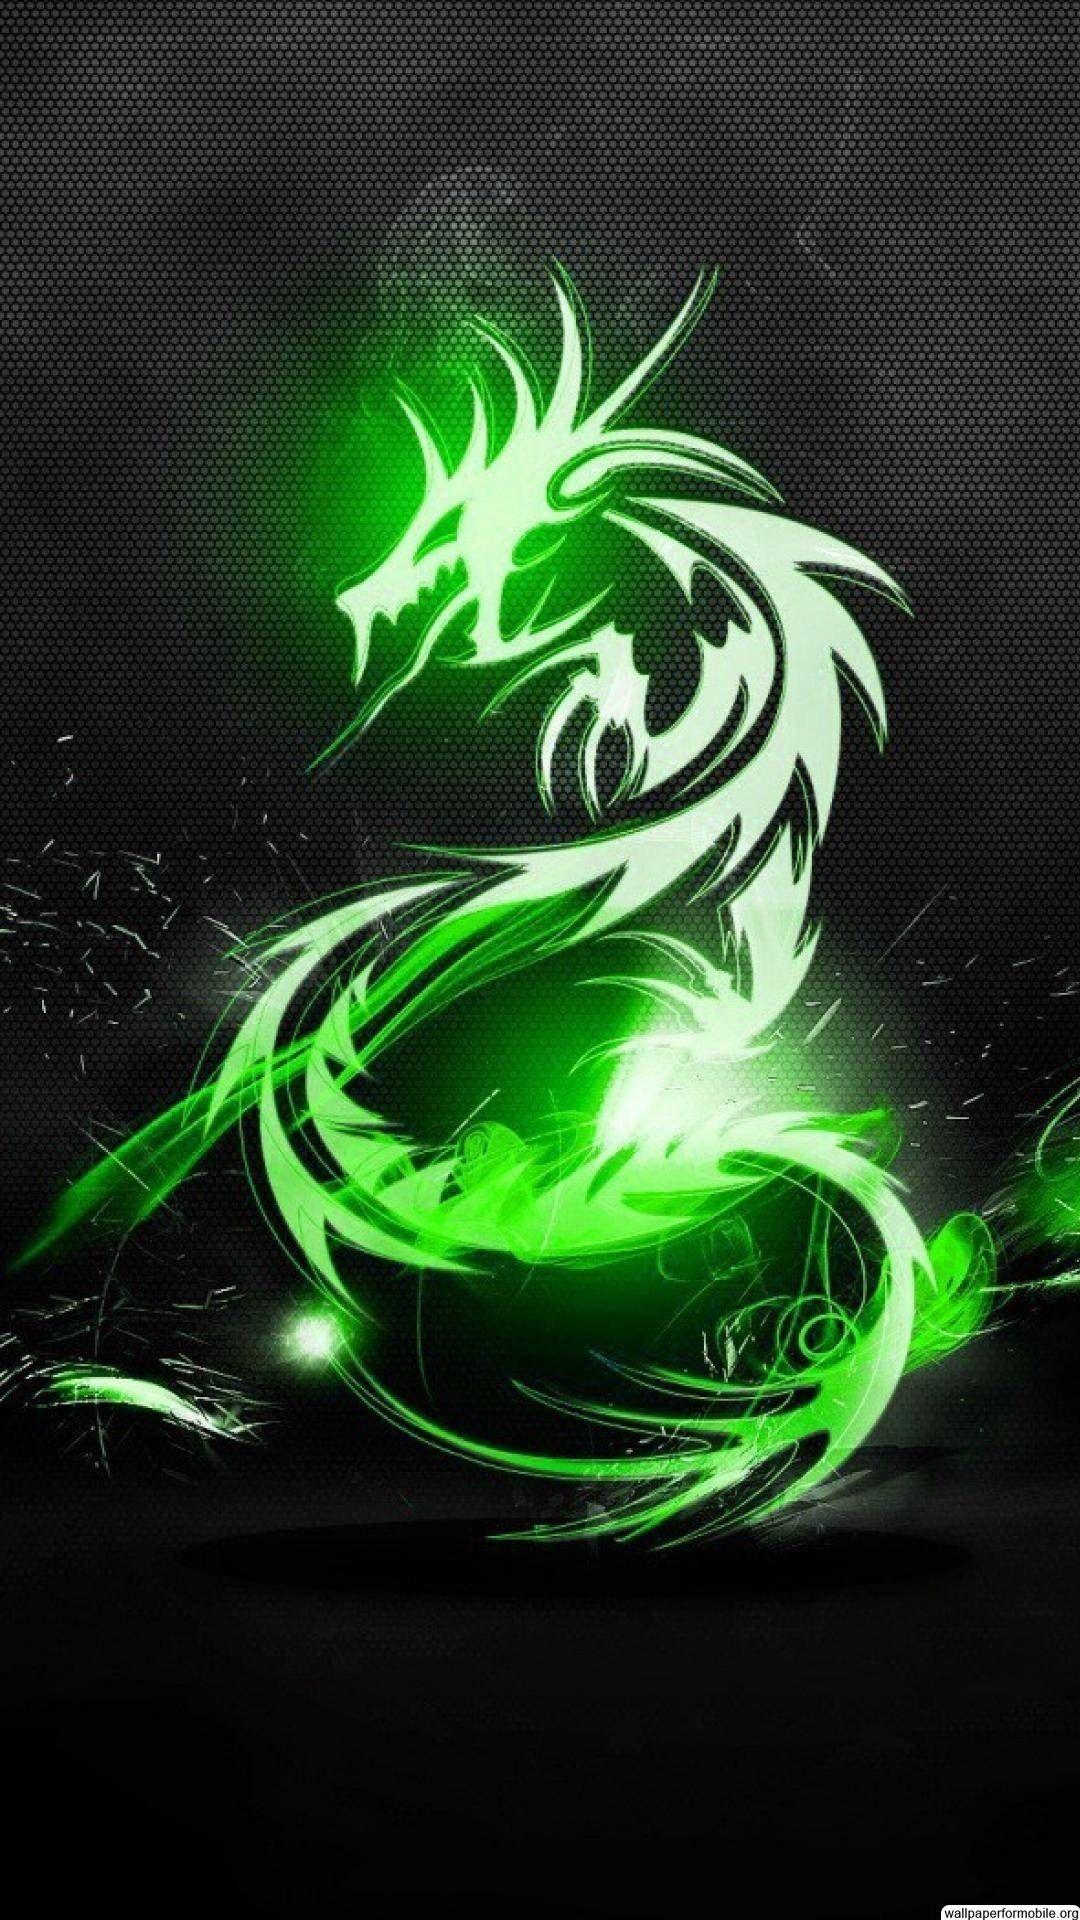 Glowing Dragon: Con rồng lung linh với bức hoạ chân thực sẽ đưa bạn vào thế giới kỳ ảo và phép thuật. Hãy để bức hoạ này đưa bạn khám phá vẻ đẹp và sức mạnh của chú rồng lung linh màu sắc này!